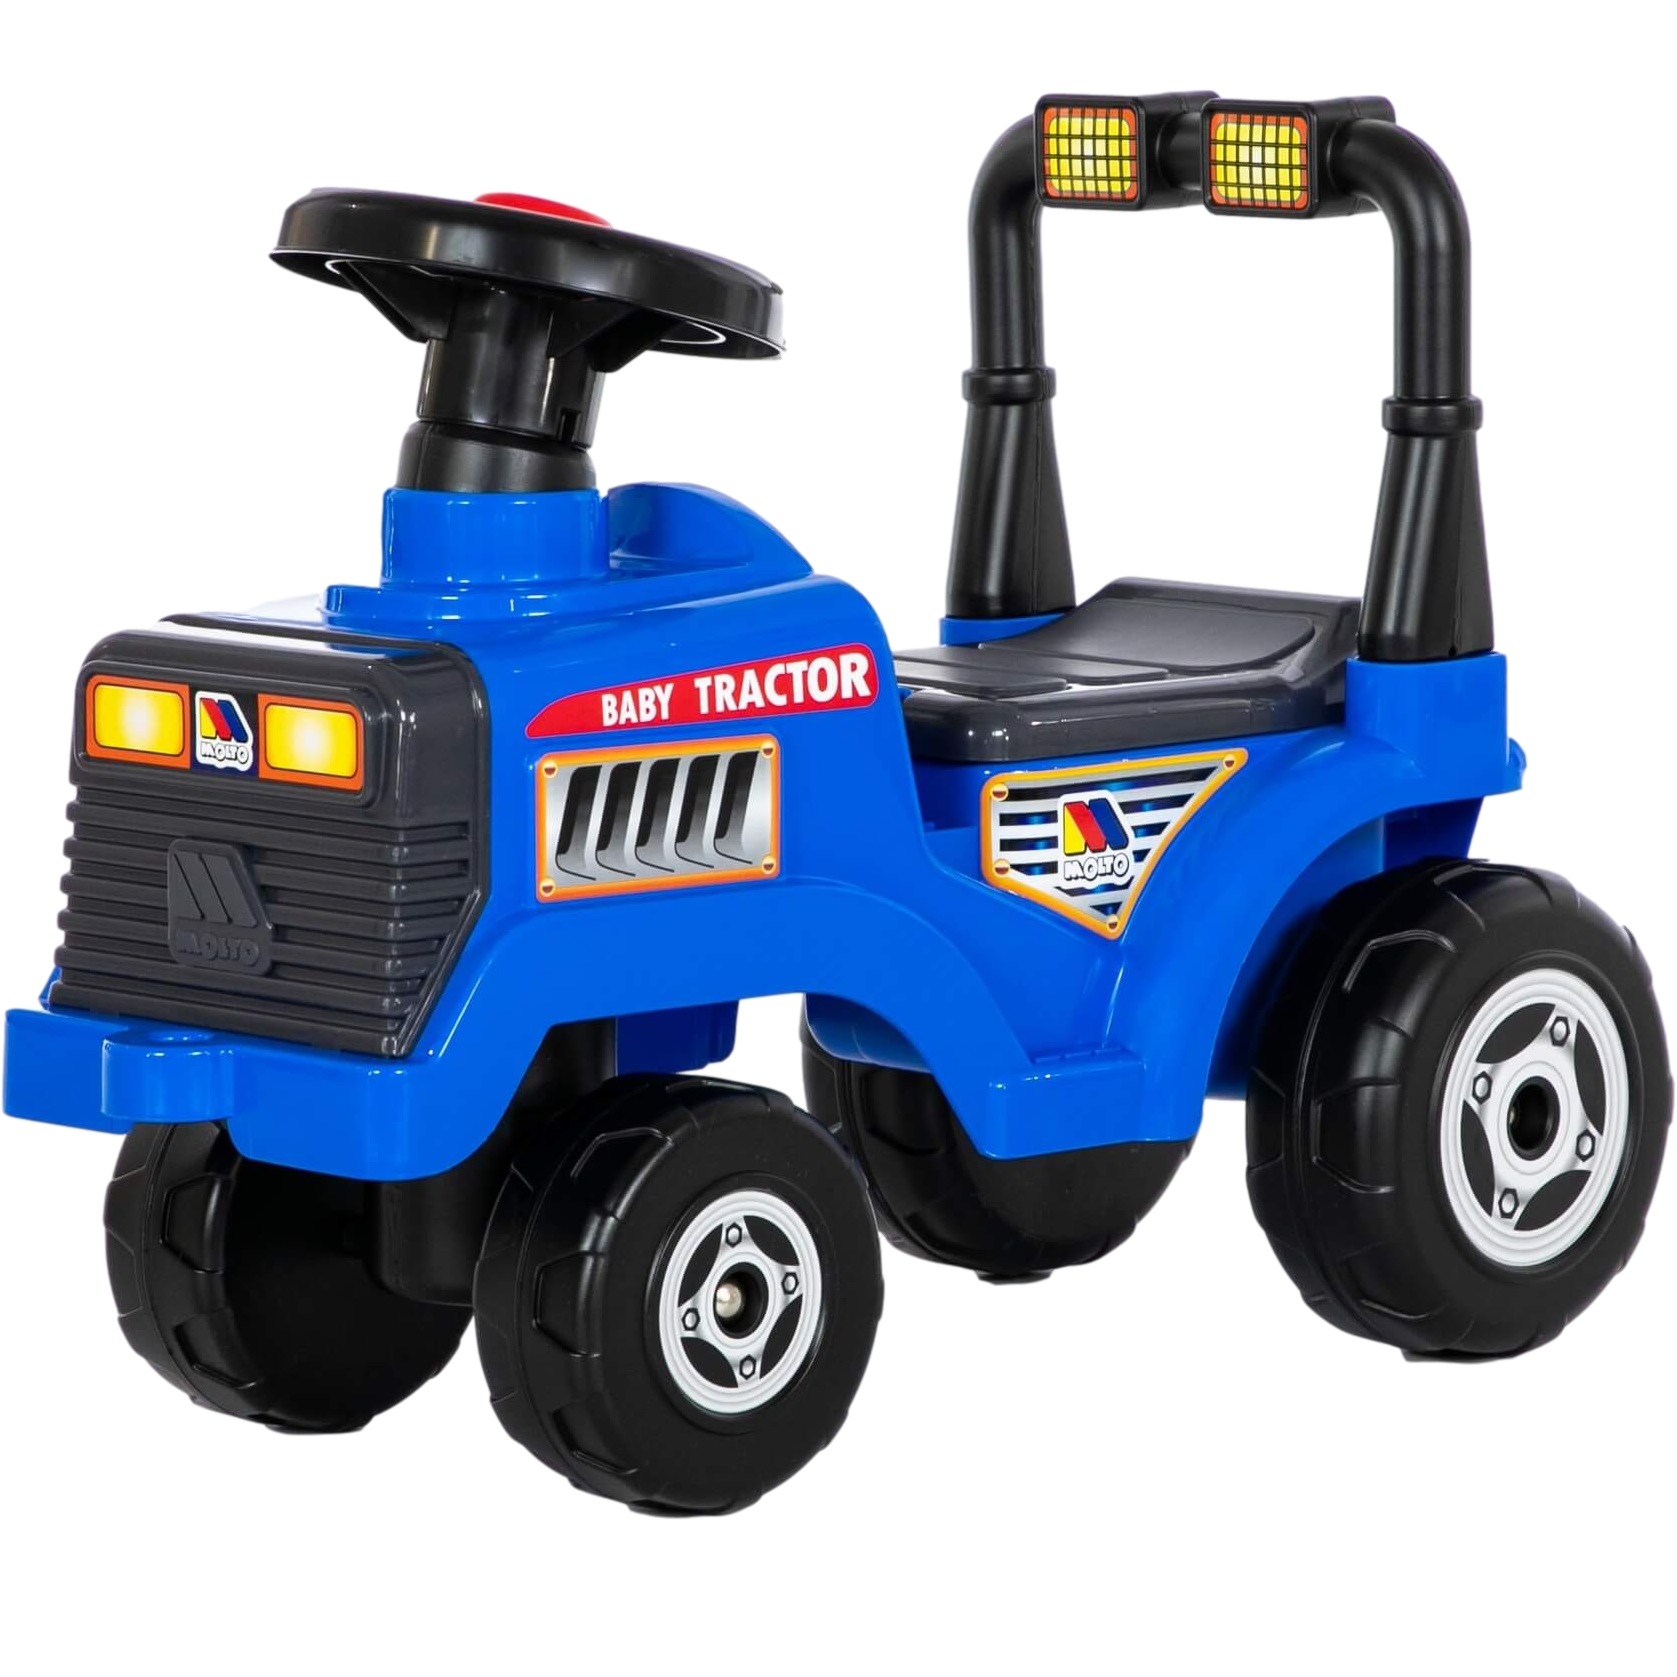 Каталка-трактор "Митя" №3 (синяя) 85412